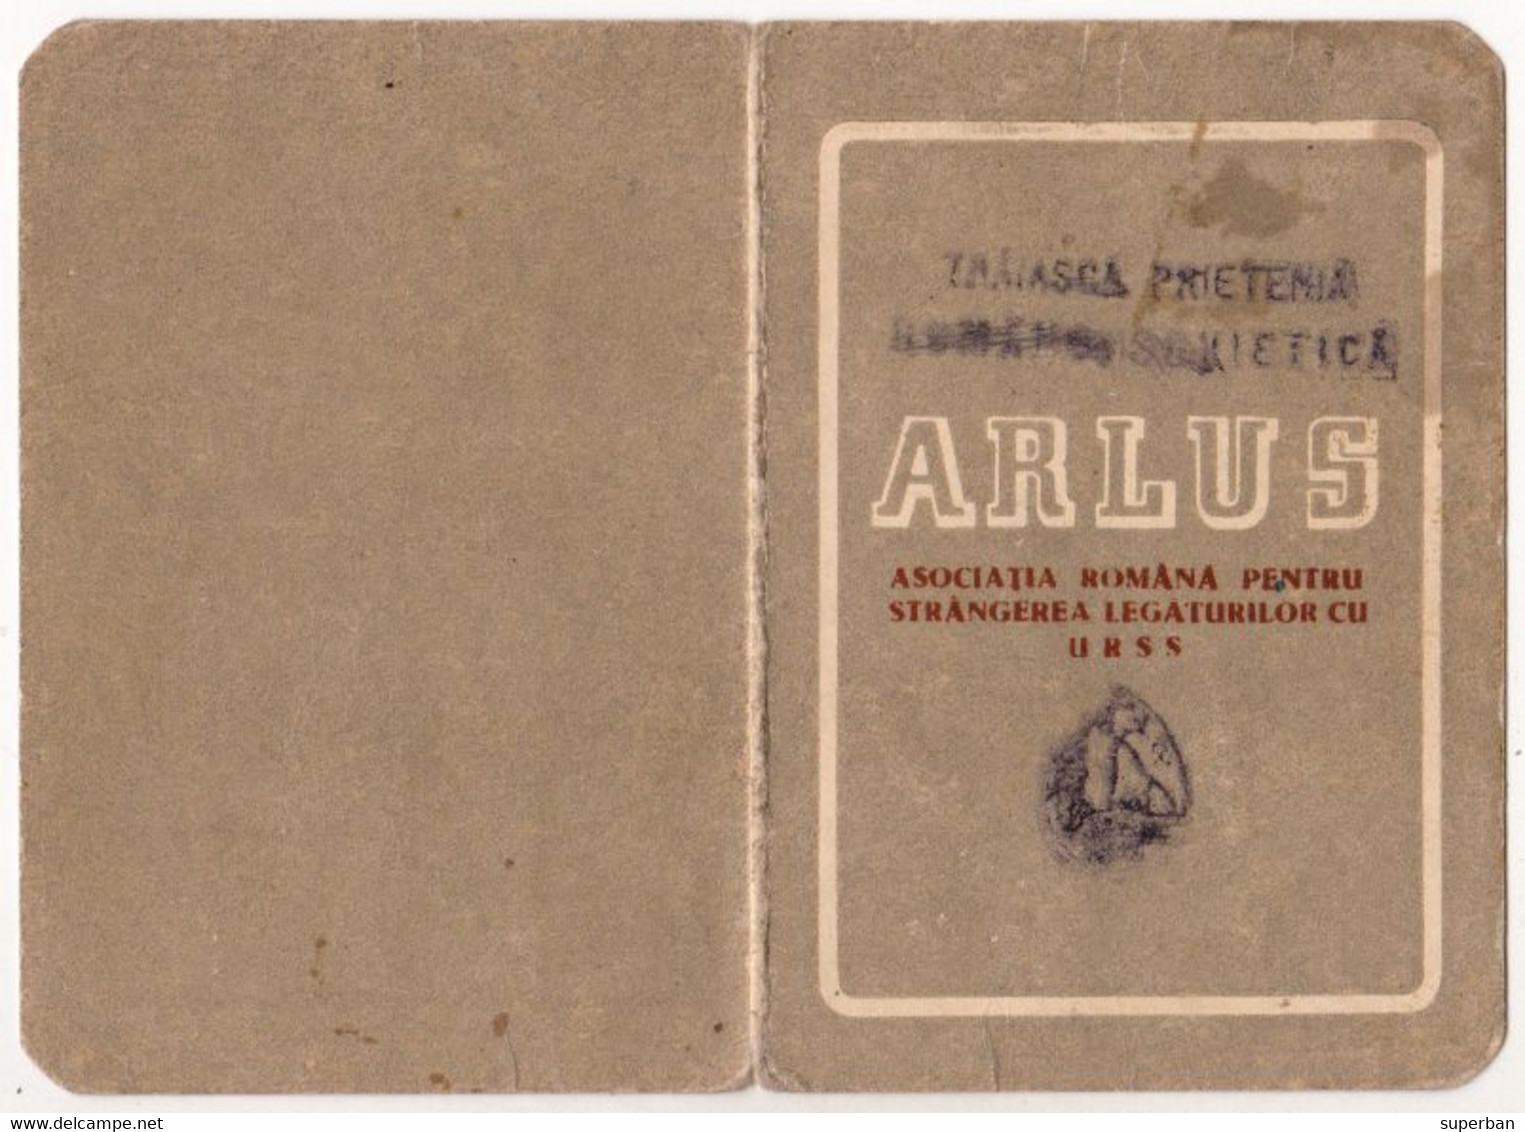 ARLUS / ASOCIAŢIA ROMÂNĂ PENTRU STRÂNGEREA LEGĂTURILOR CU U.R.S.S. - CARNET De MEMBRU - 1949 - CINDERELLA STAMP (aj401) - Steuermarken